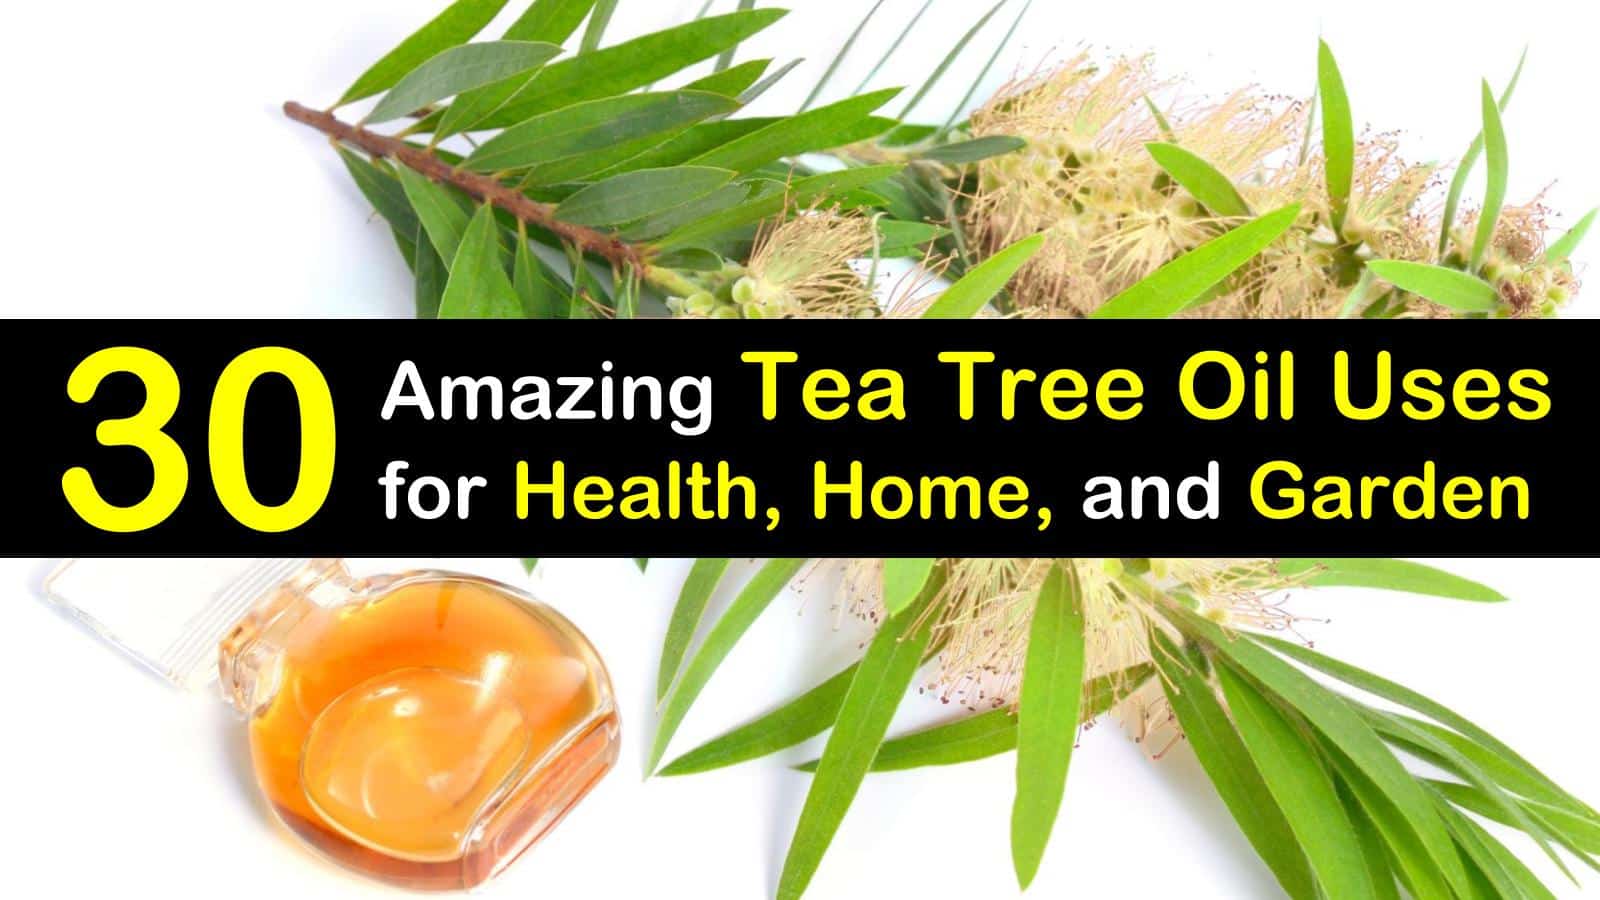 tea tree oil uses titleimg1